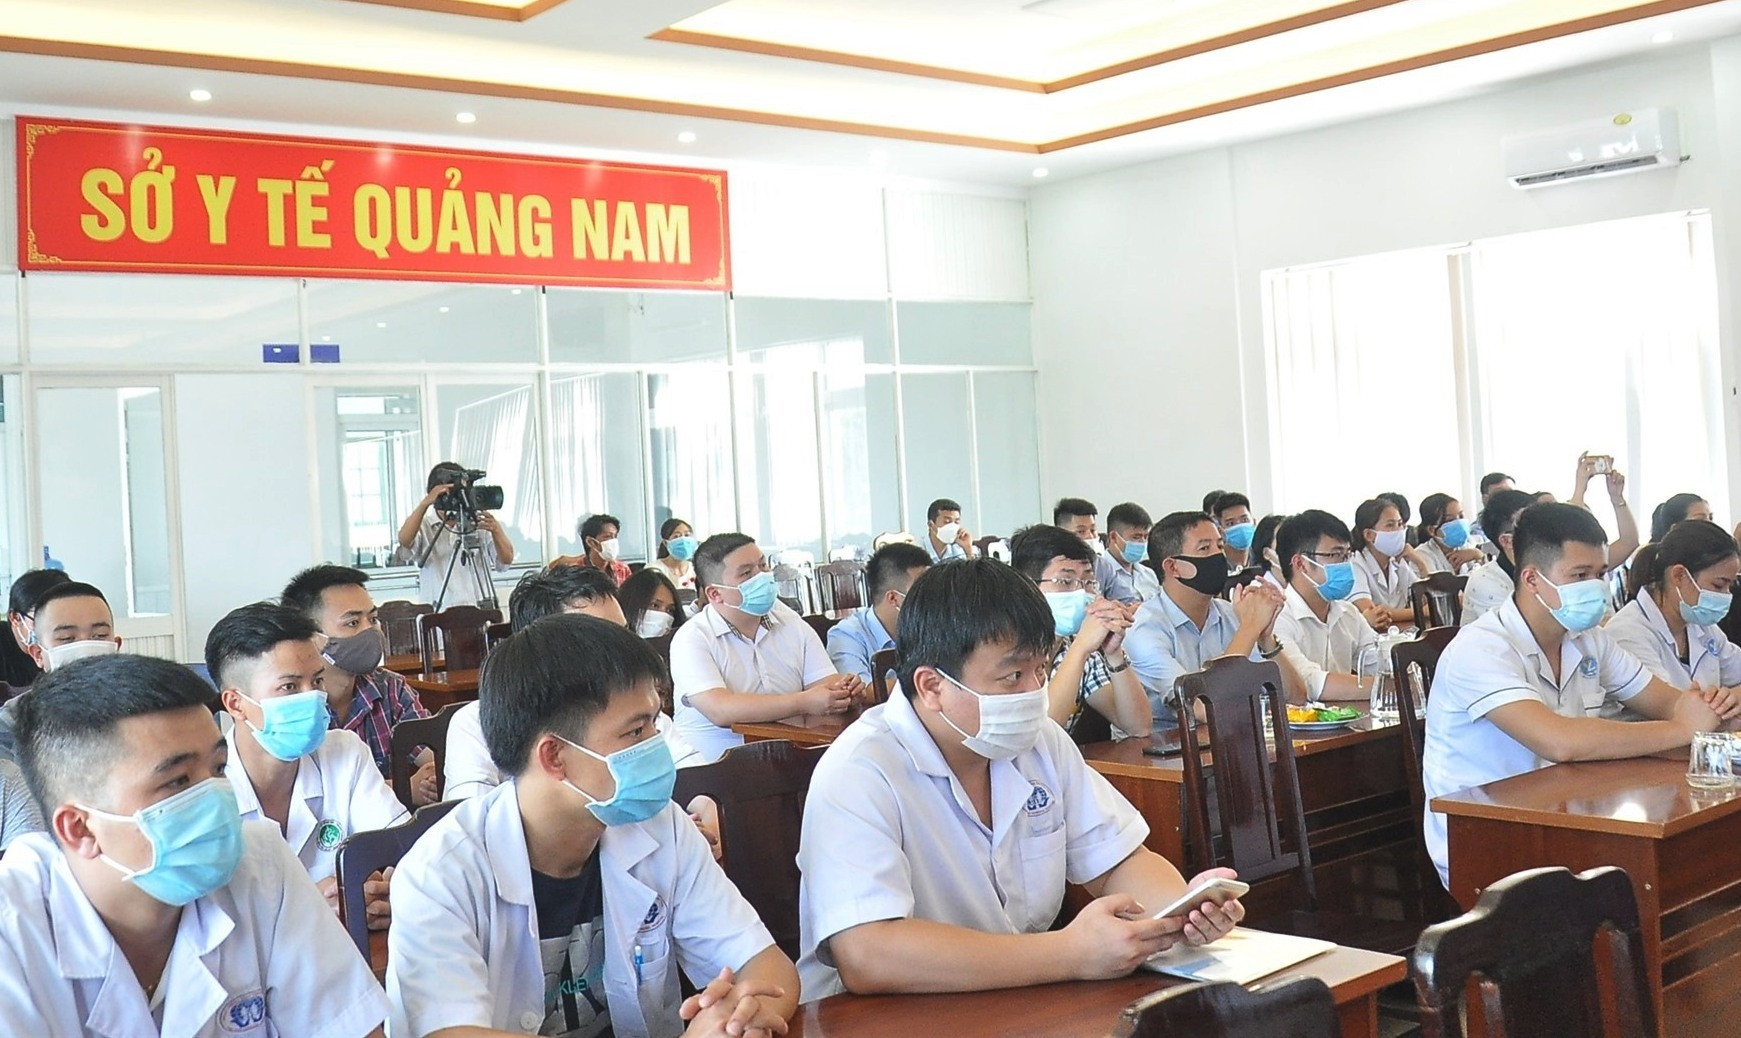 Từ hôm nay, 18 bác sĩ và 20 điều dưỡng của tỉnh Phú Thọ sẽ bắt tay hỗ trợ ngành Y tế Quảng Nam chống dịch. Ảnh: VINH ANH